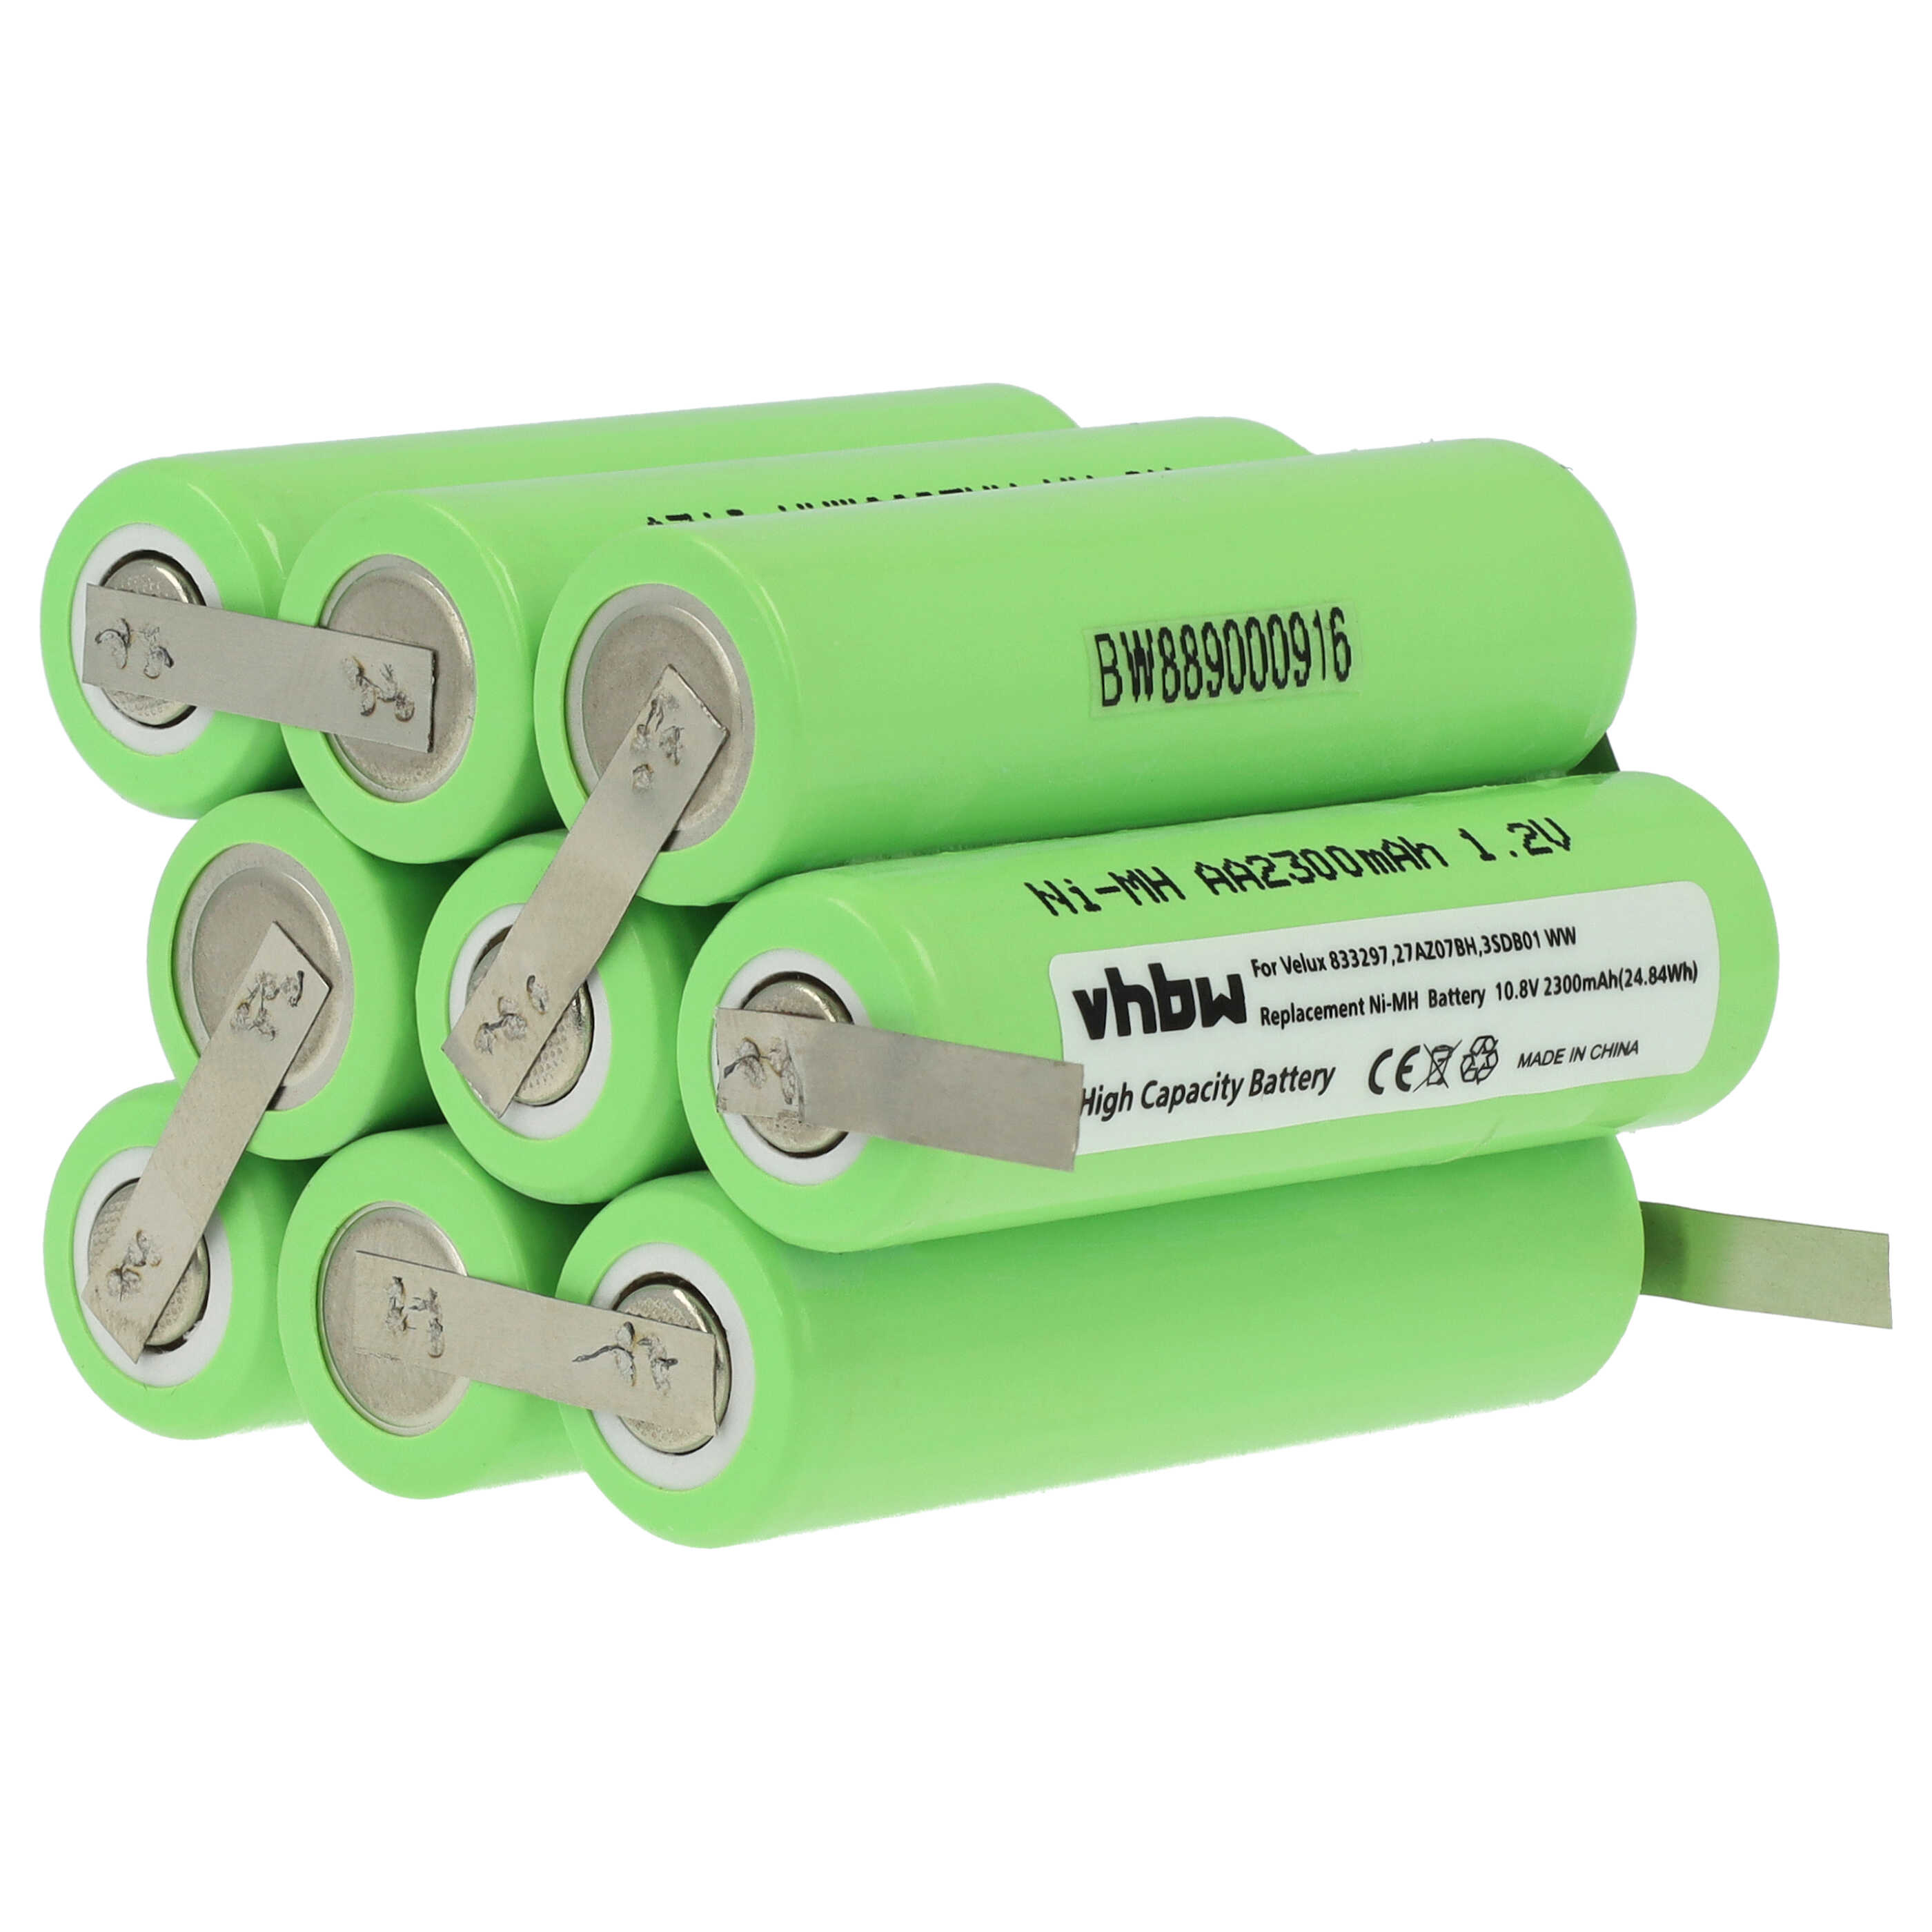 Batterie remplace 833297, 27AZ07BH, 3SD B01 WW pour store volet de fenêtre - 2300mAh 10,8V NiMH